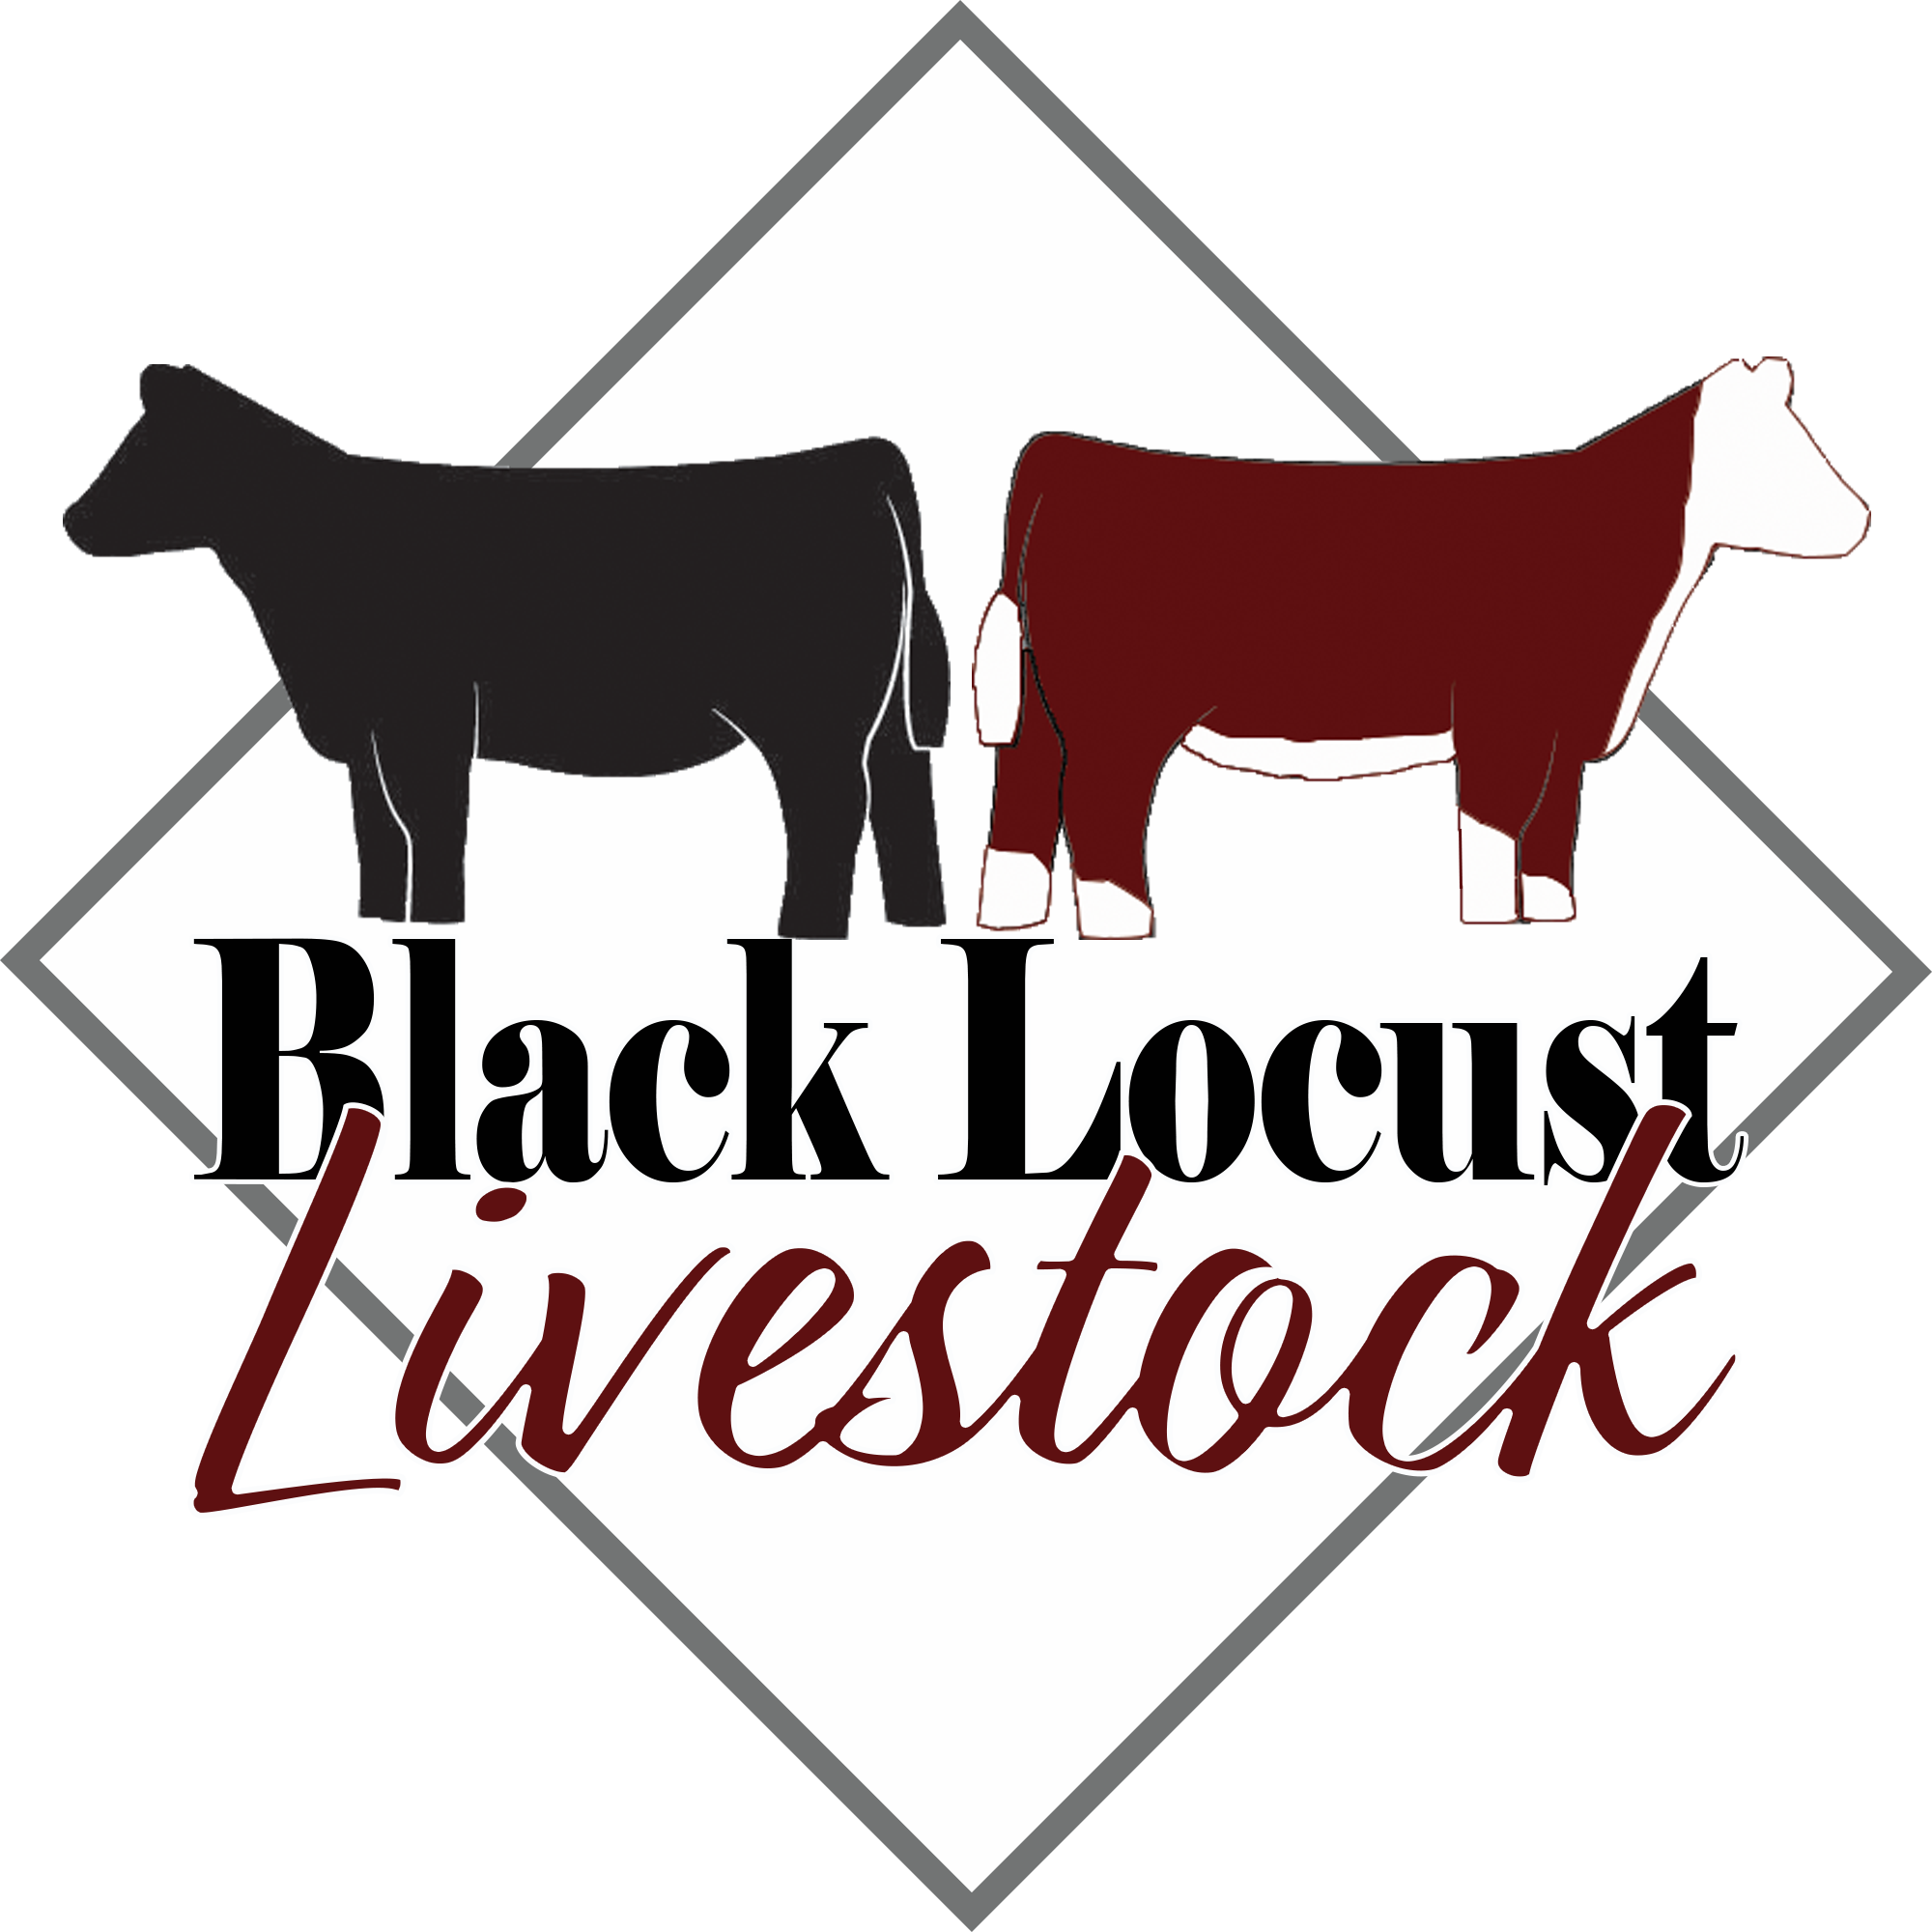 Black Locust Livestock